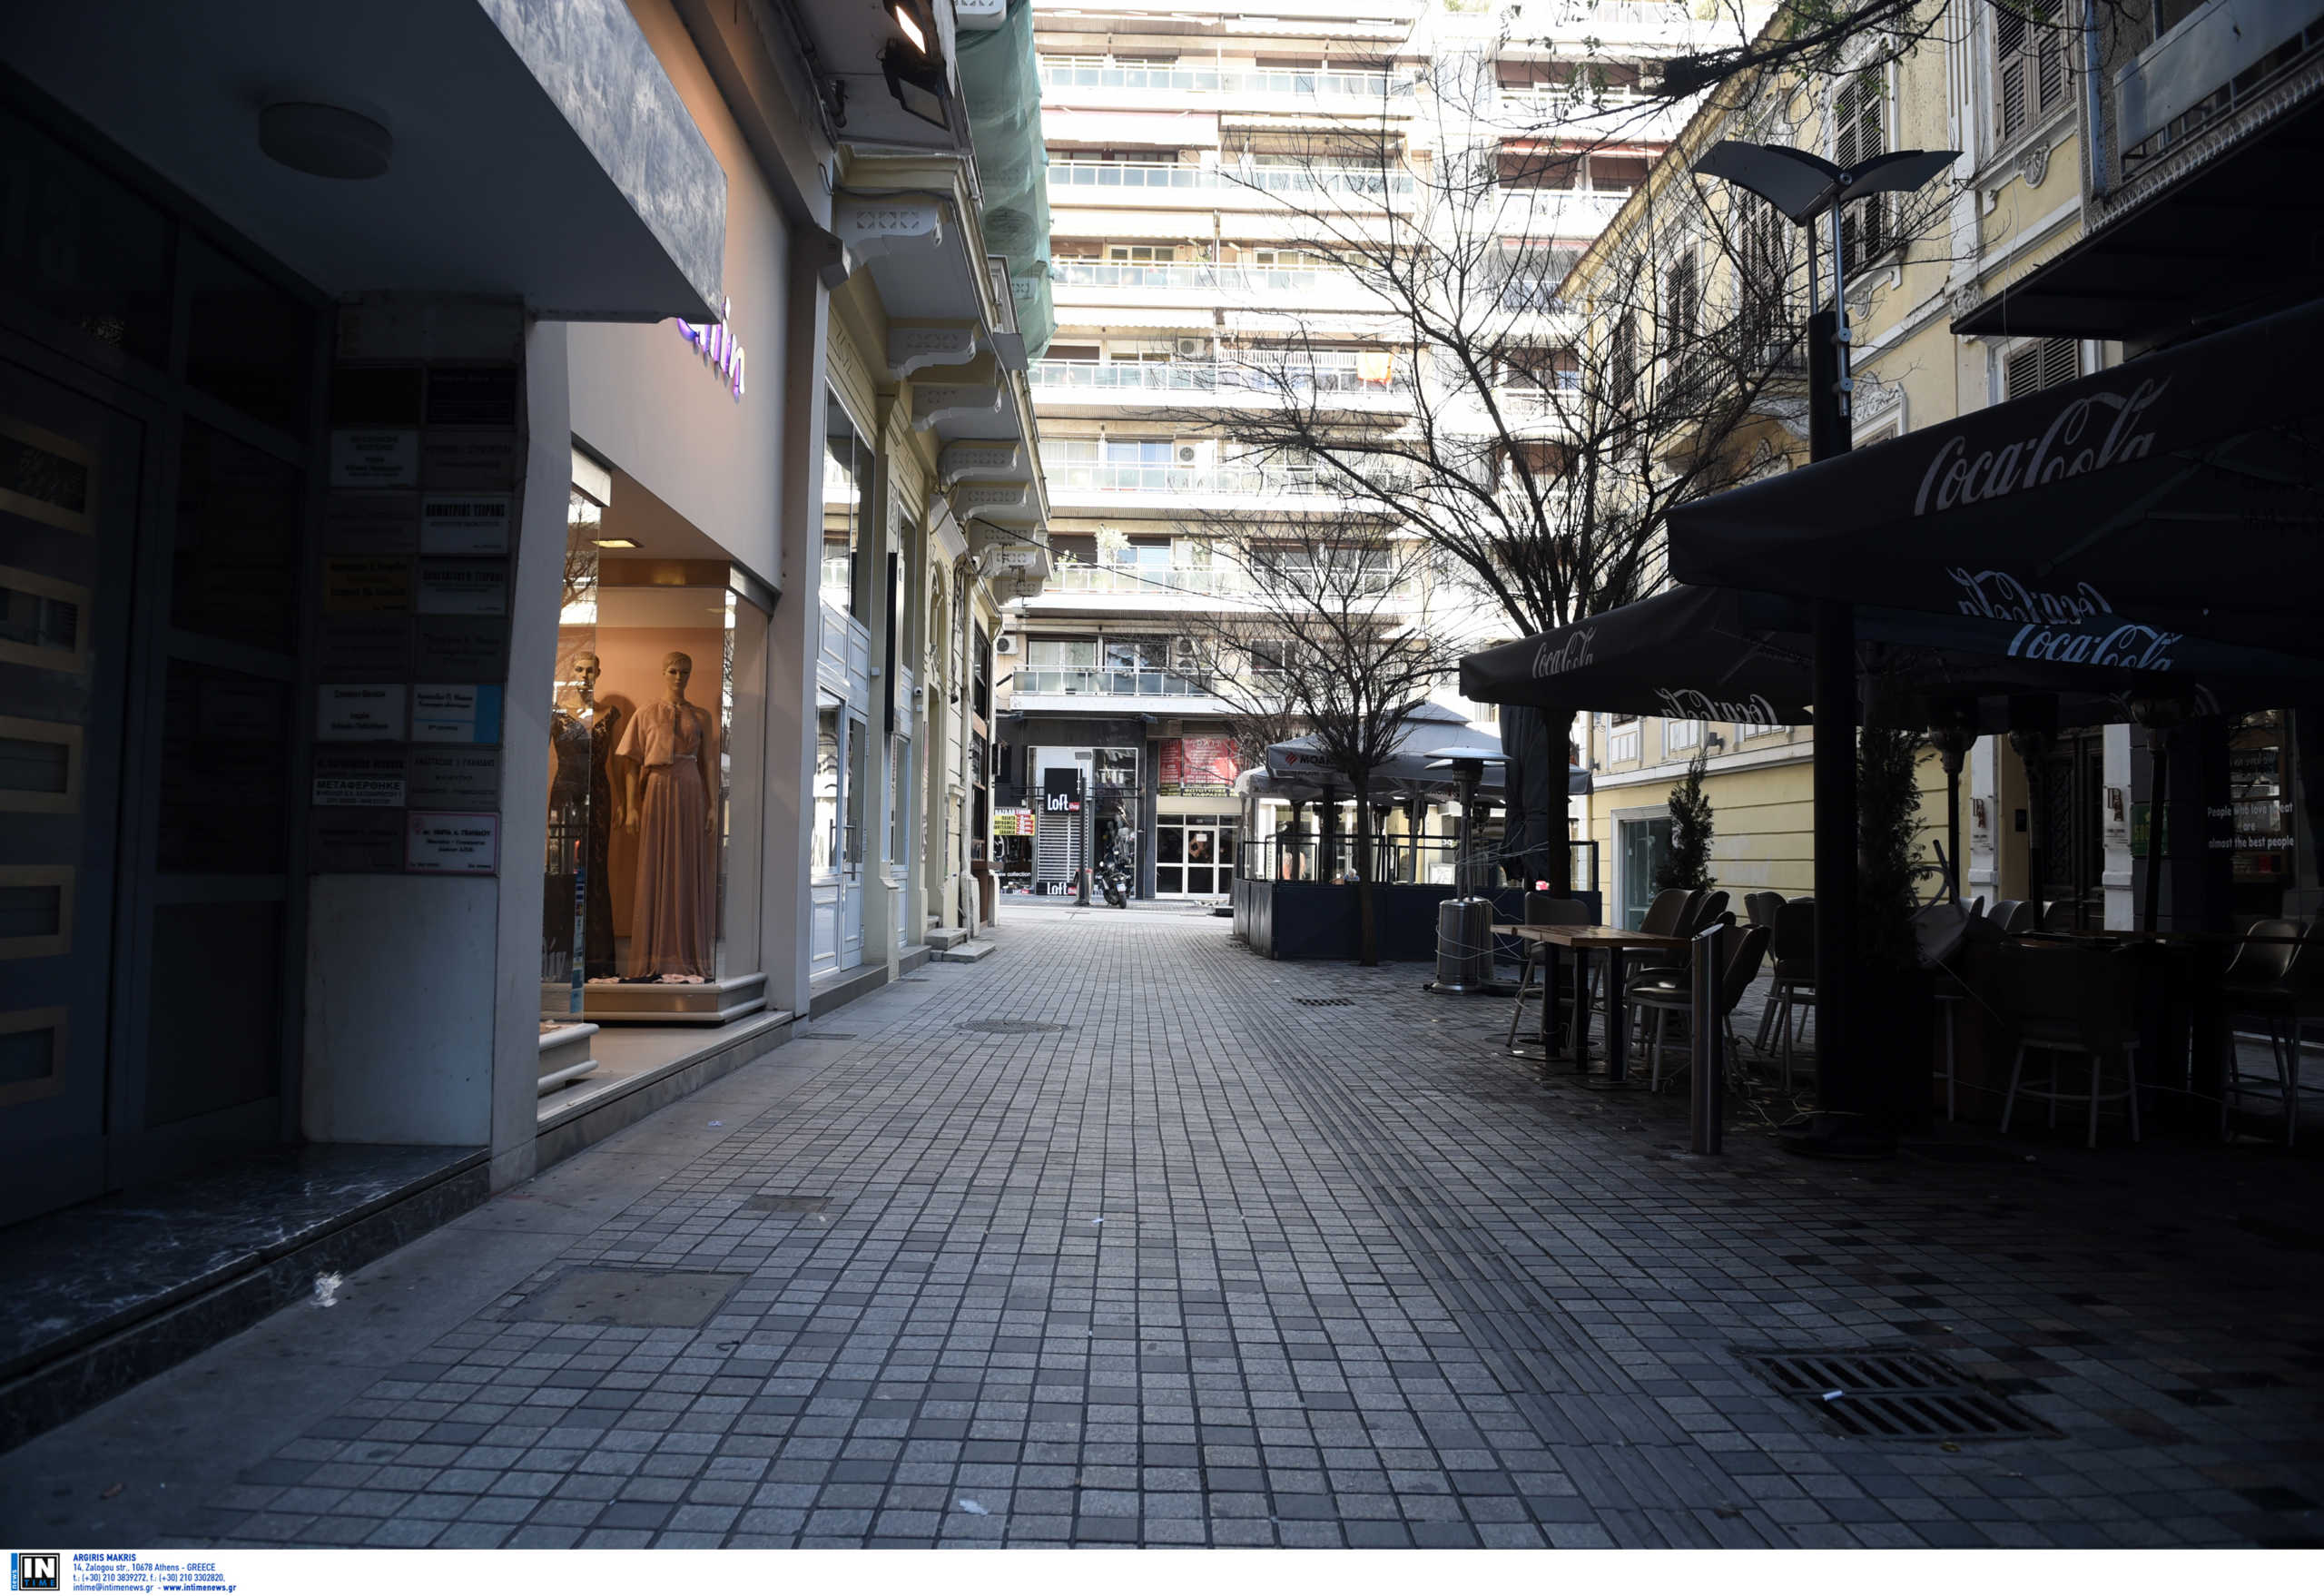 Κορονοϊός: Άνοιξε το μαγαζί του για εργασίες, αθωώθηκε και κάθεται ξανά στο εδώλιο